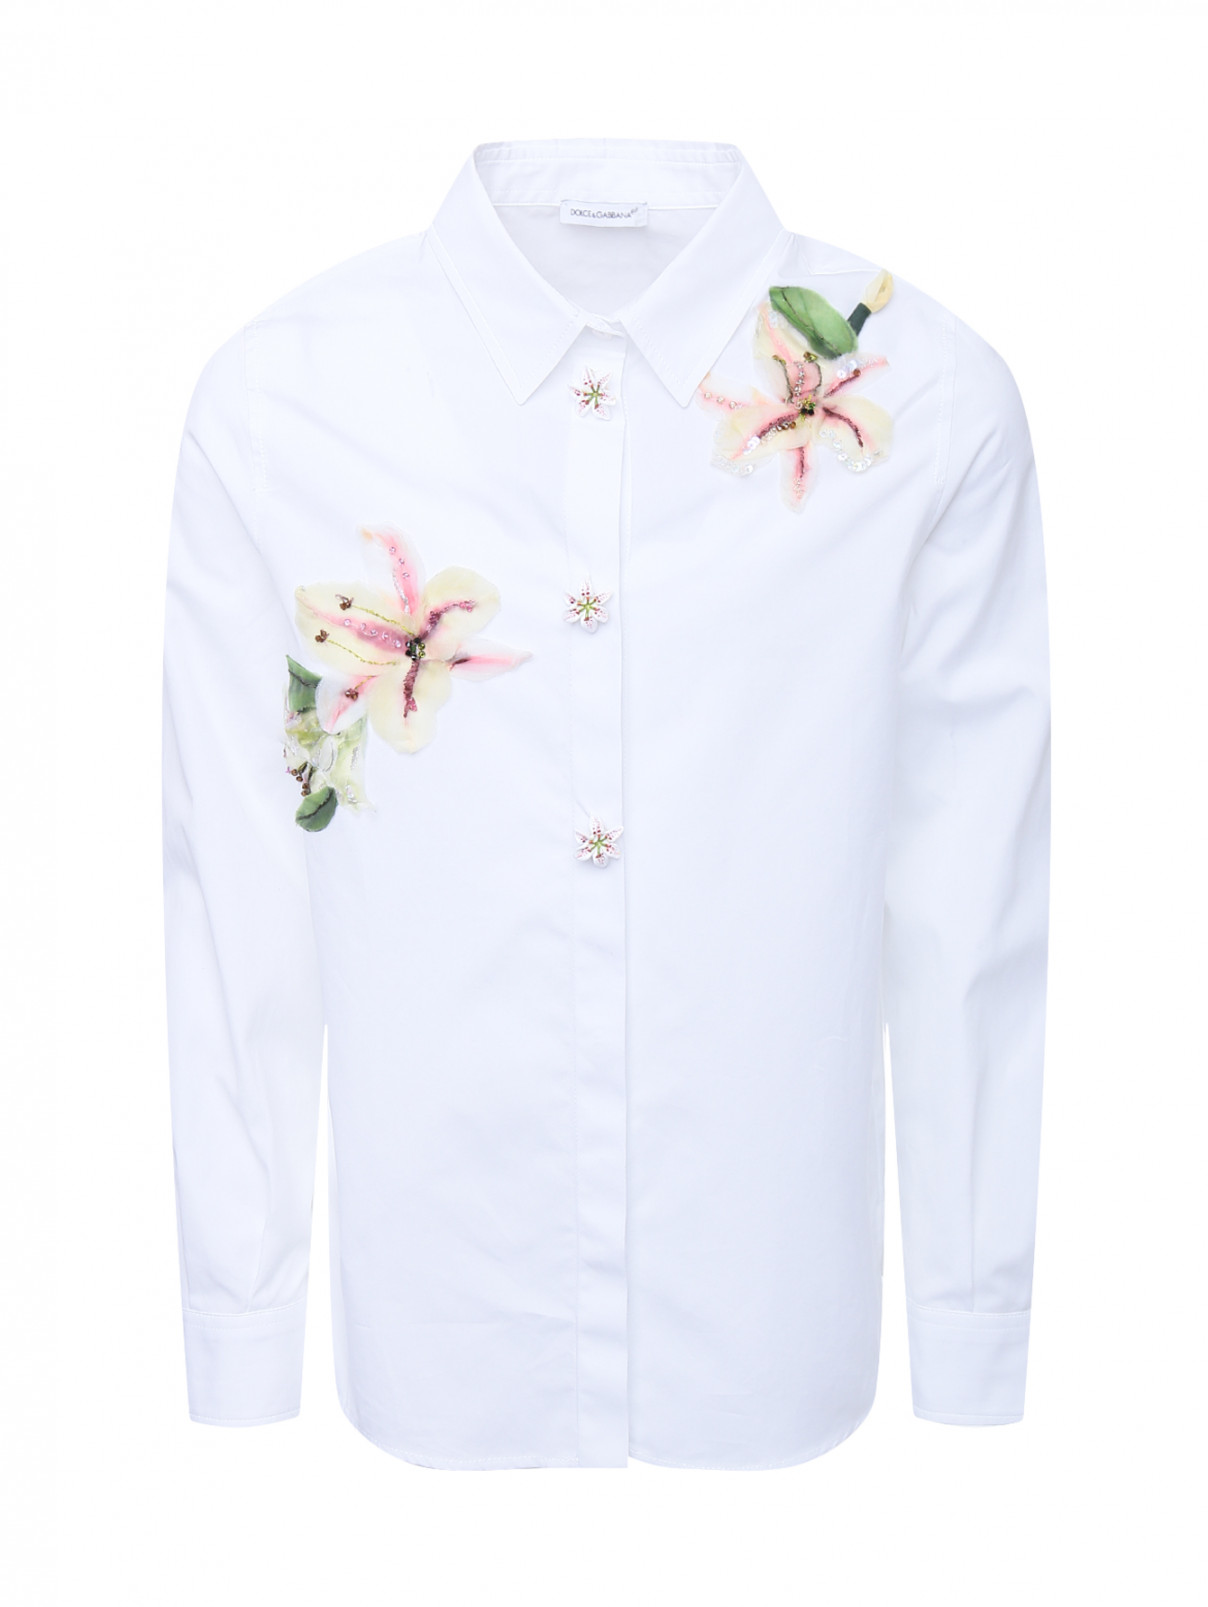 Хлопковая рубашка с цветочной аппликацией Dolce & Gabbana  –  Общий вид  – Цвет:  Белый